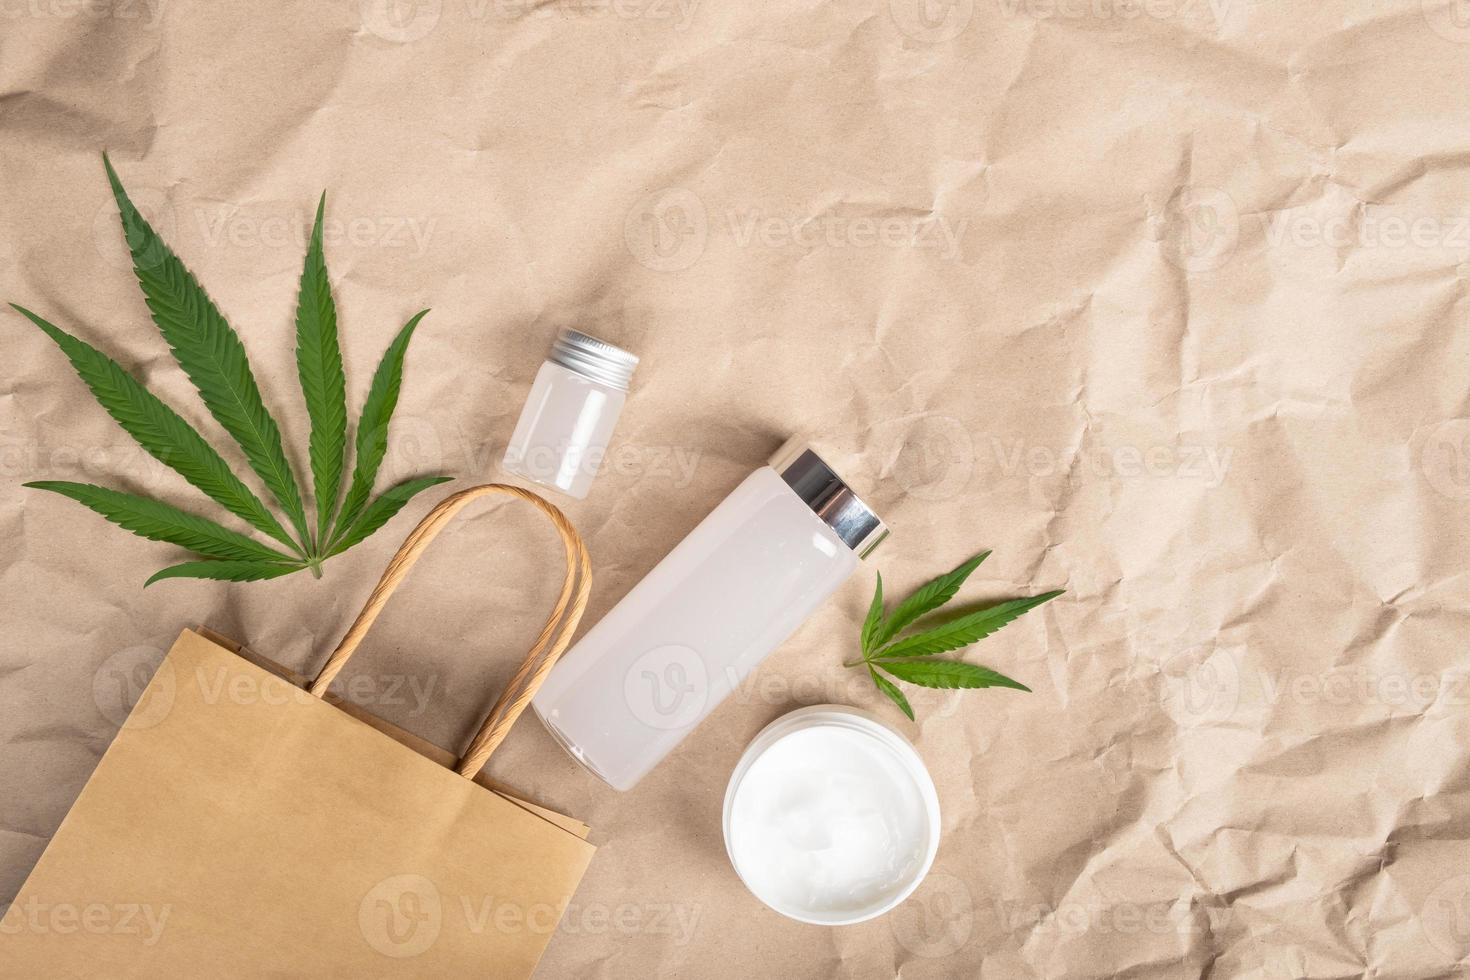 cosmetica met marihuana-plantenextract anti-aging cosmetische lichaamsverzorgingsproducten met marihuanabladeren kopieer ruimte foto